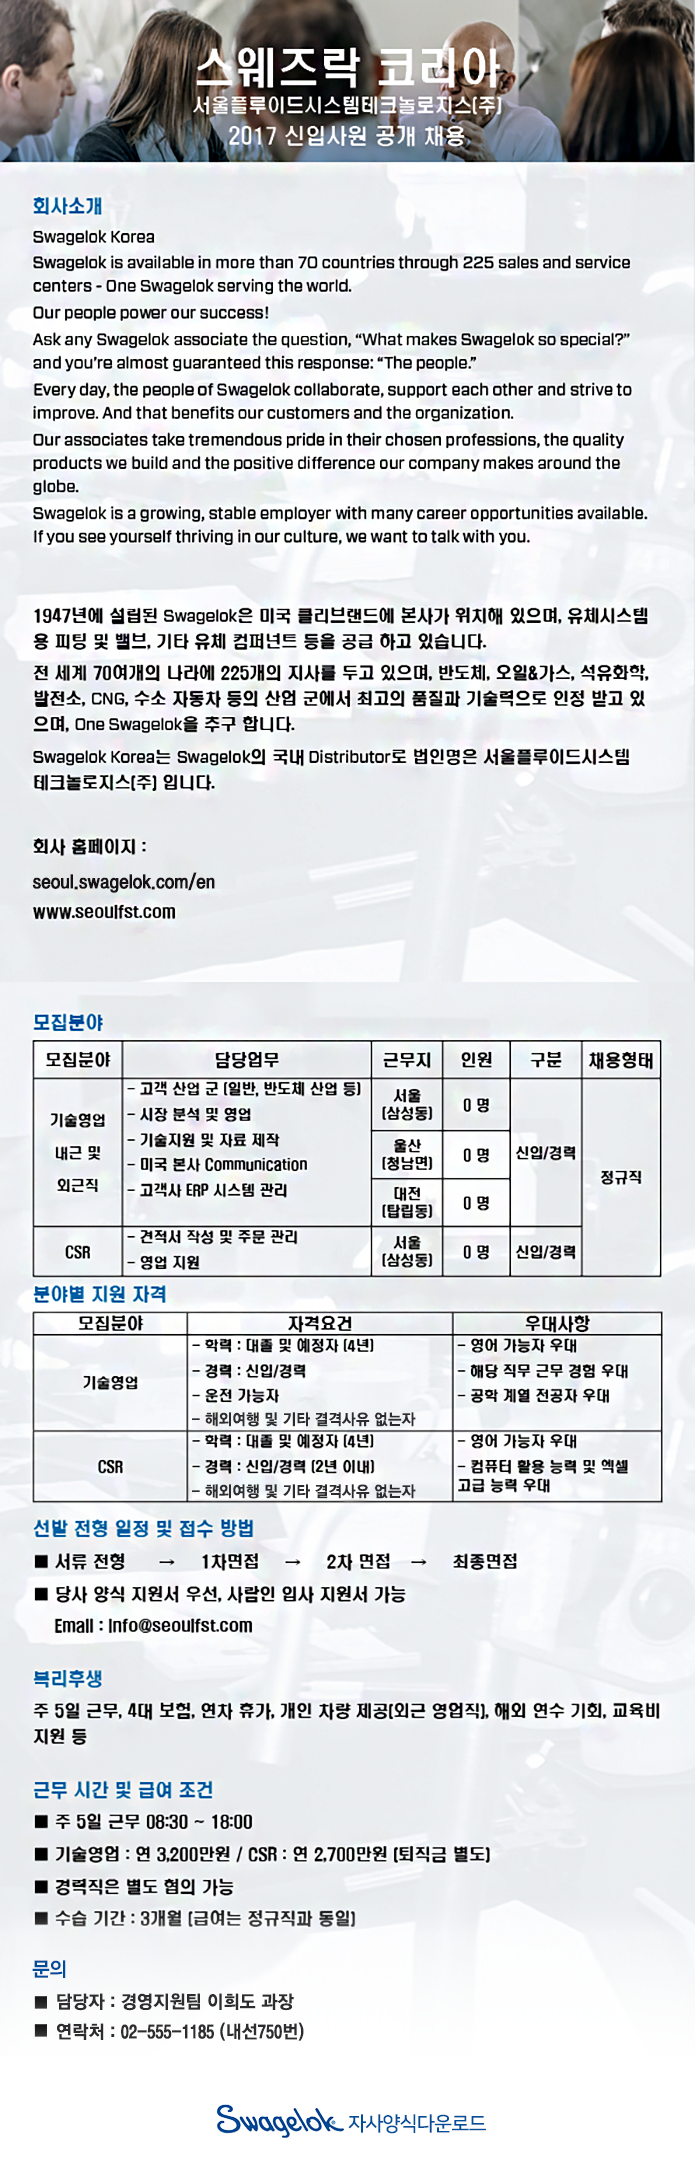 서울플루이드시스템테크놀로지스 2017년 신입/경력사원 공개채용